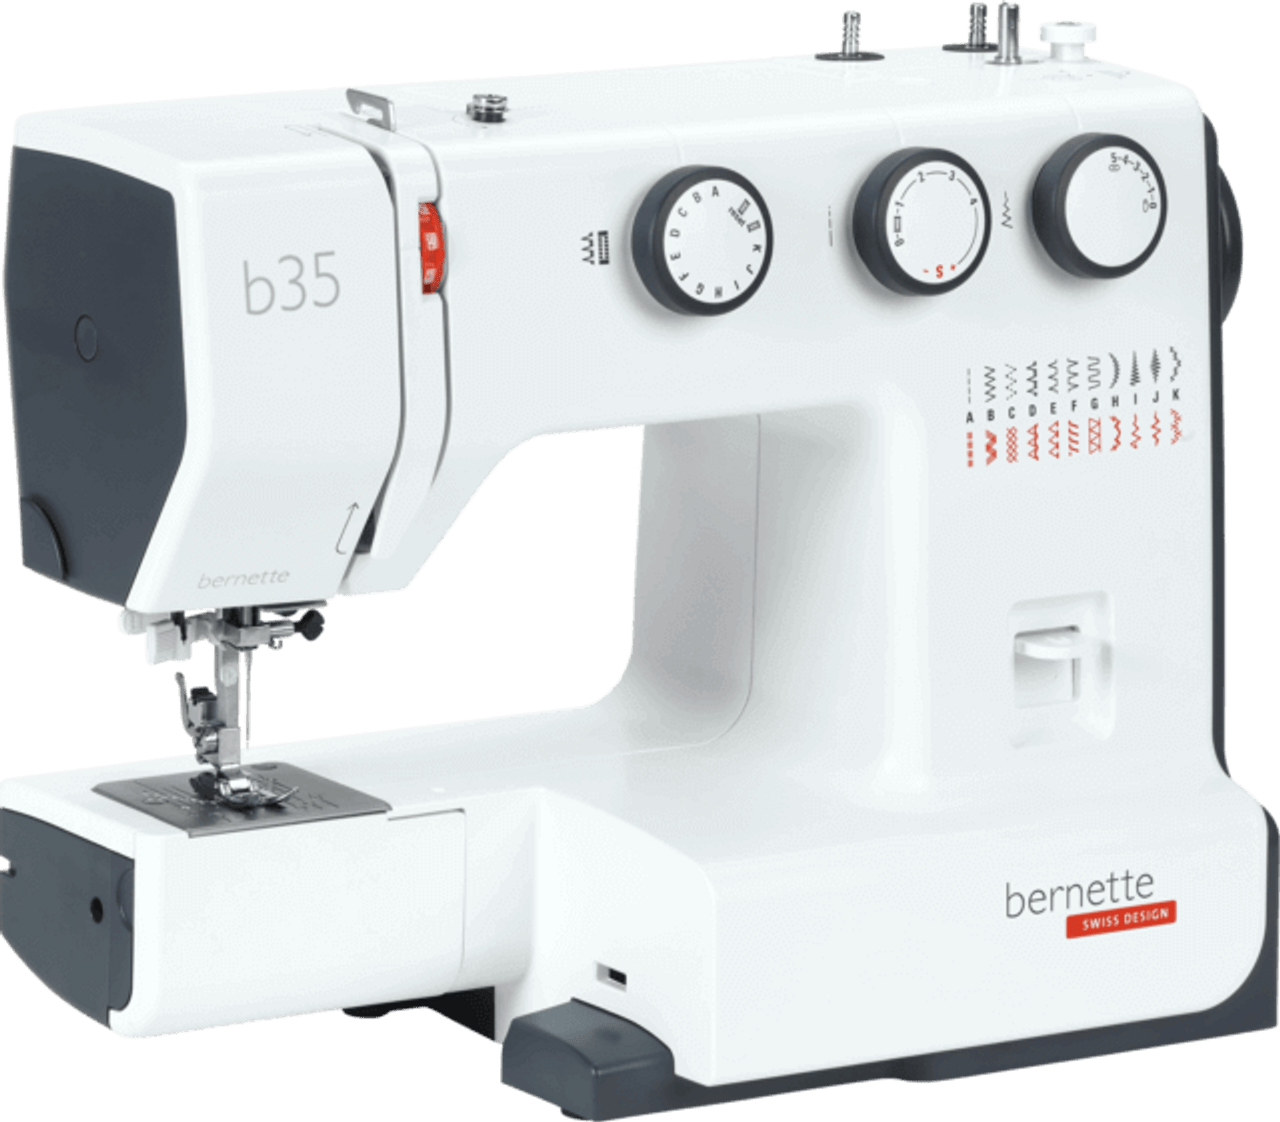 Bernette 33 - Sewing Machine